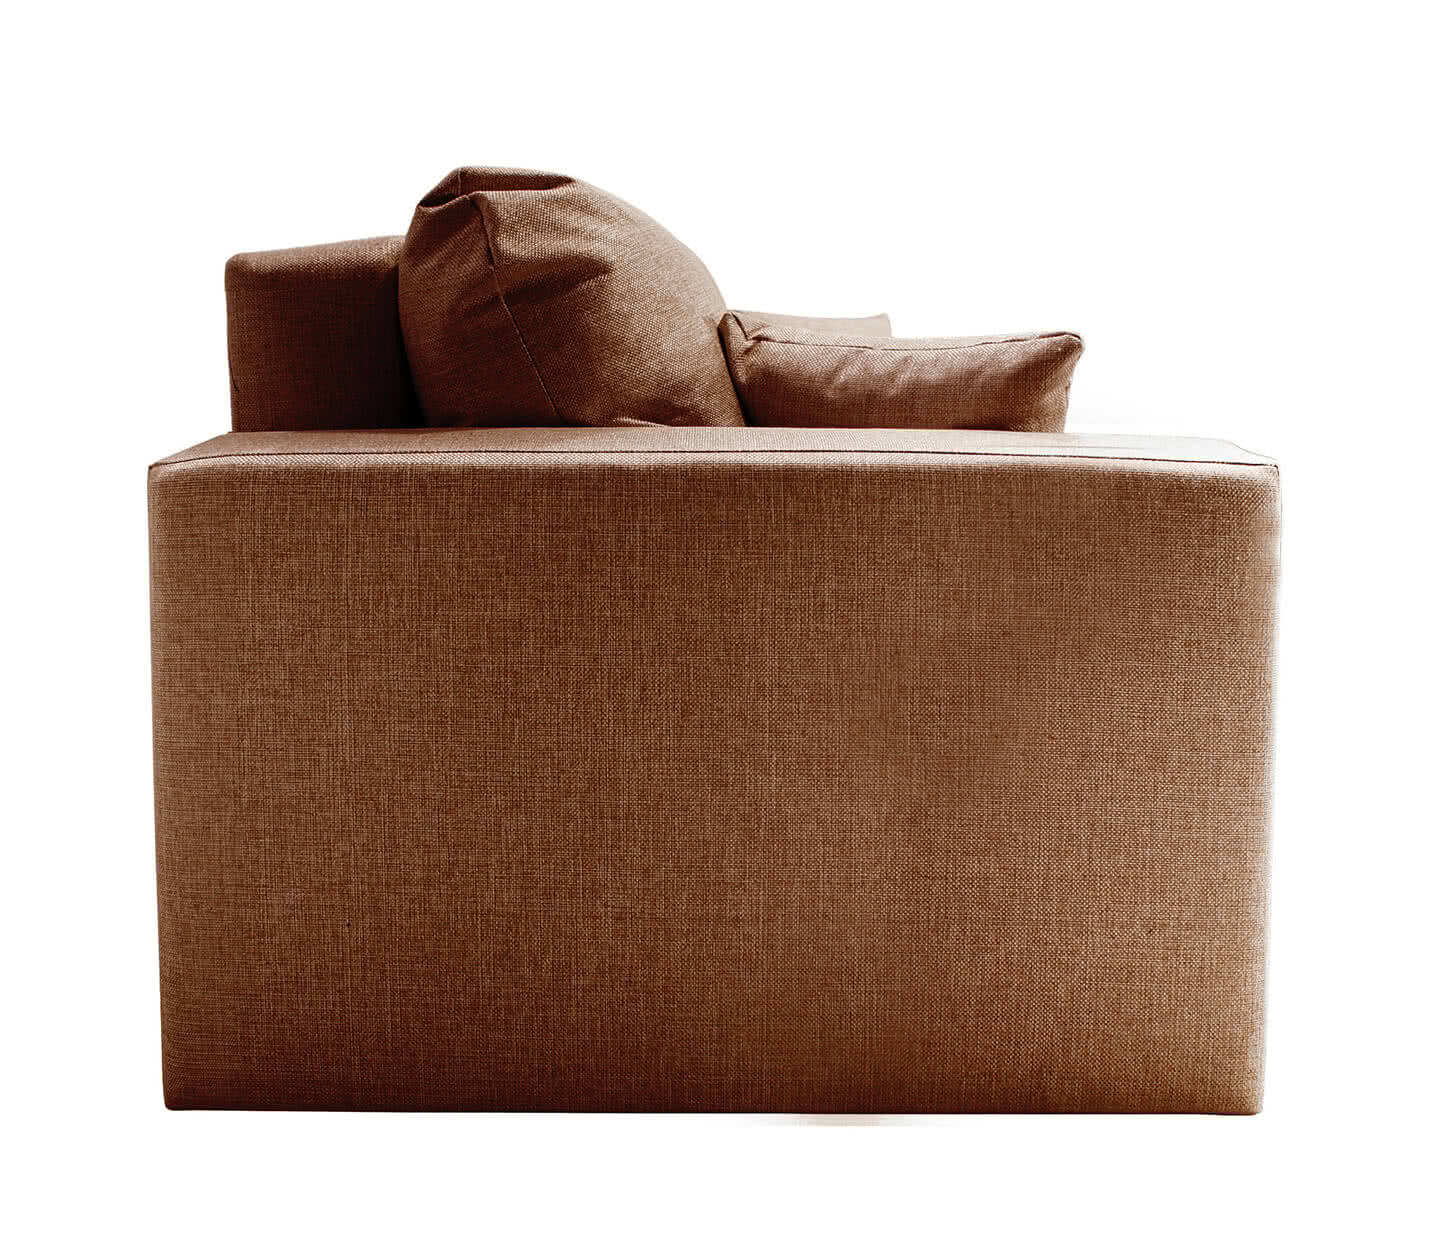 Купить диван FotoDivan Диван Ливерпуль, Коричневый 150 х 195 см Коричневый дешево на официальном сайте